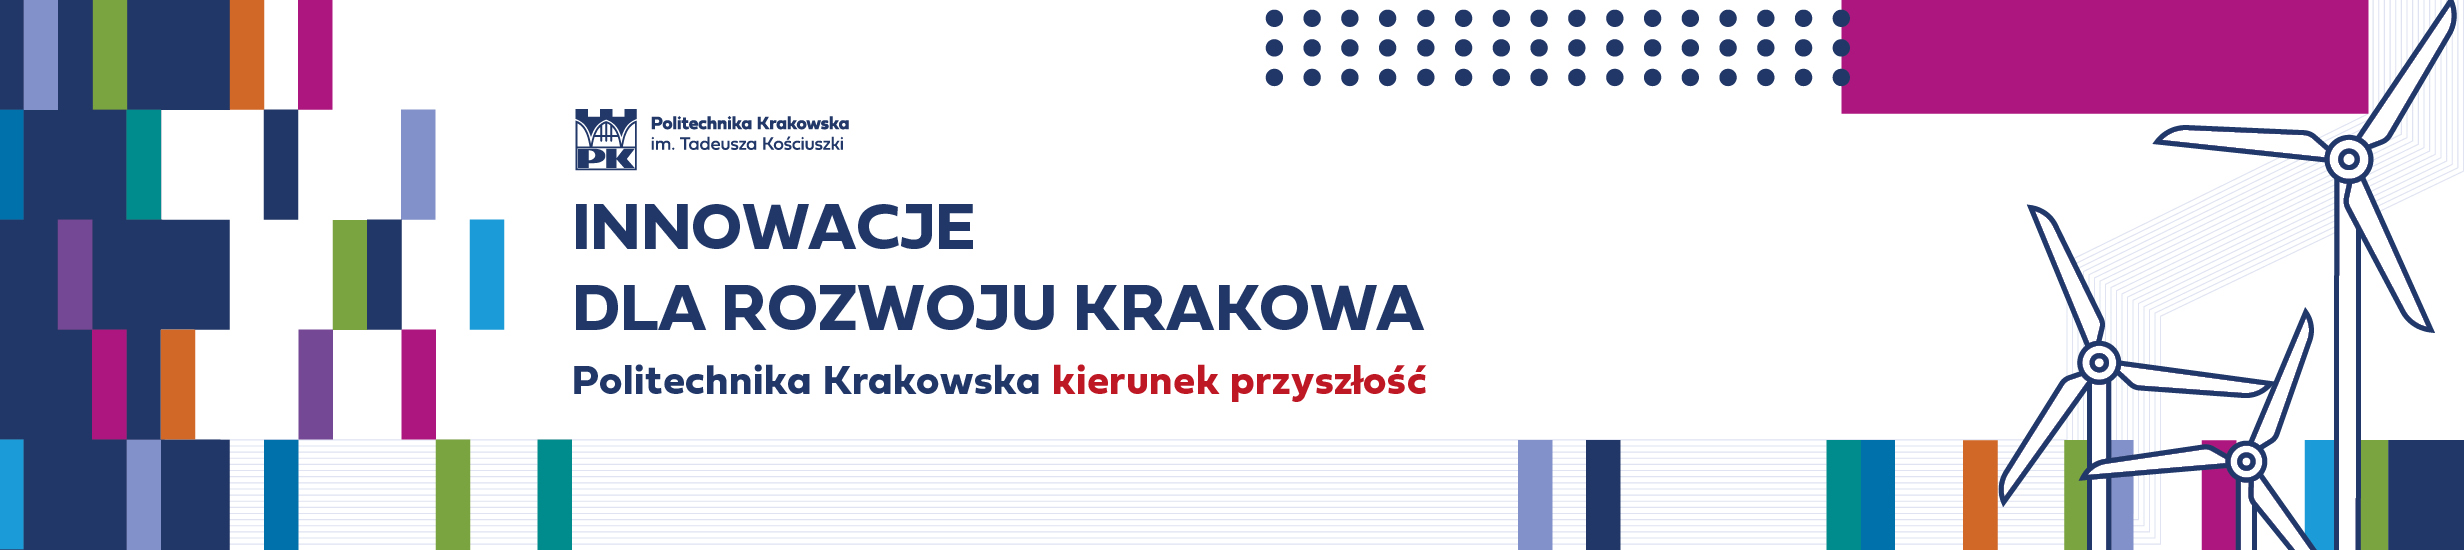 Grafika reklamowa z hasłem: "Innowacje dla rozwoju Krakowa"